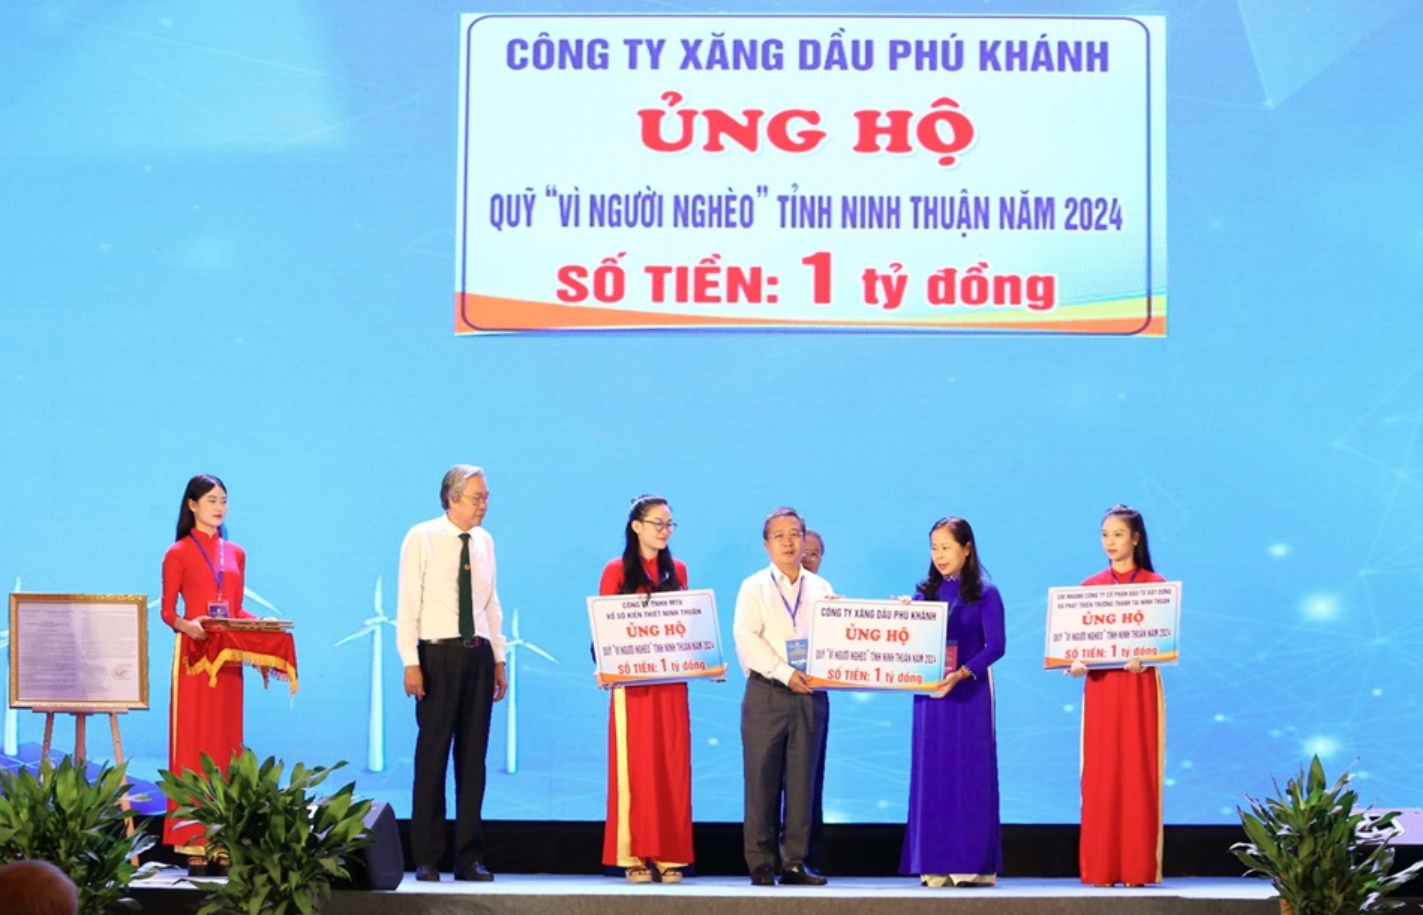 Petrolimex Khánh Hòa hỗ trợ 1 tỷ đồng vào Quỹ “Vì người nghèo” tỉnh Ninh Thuận